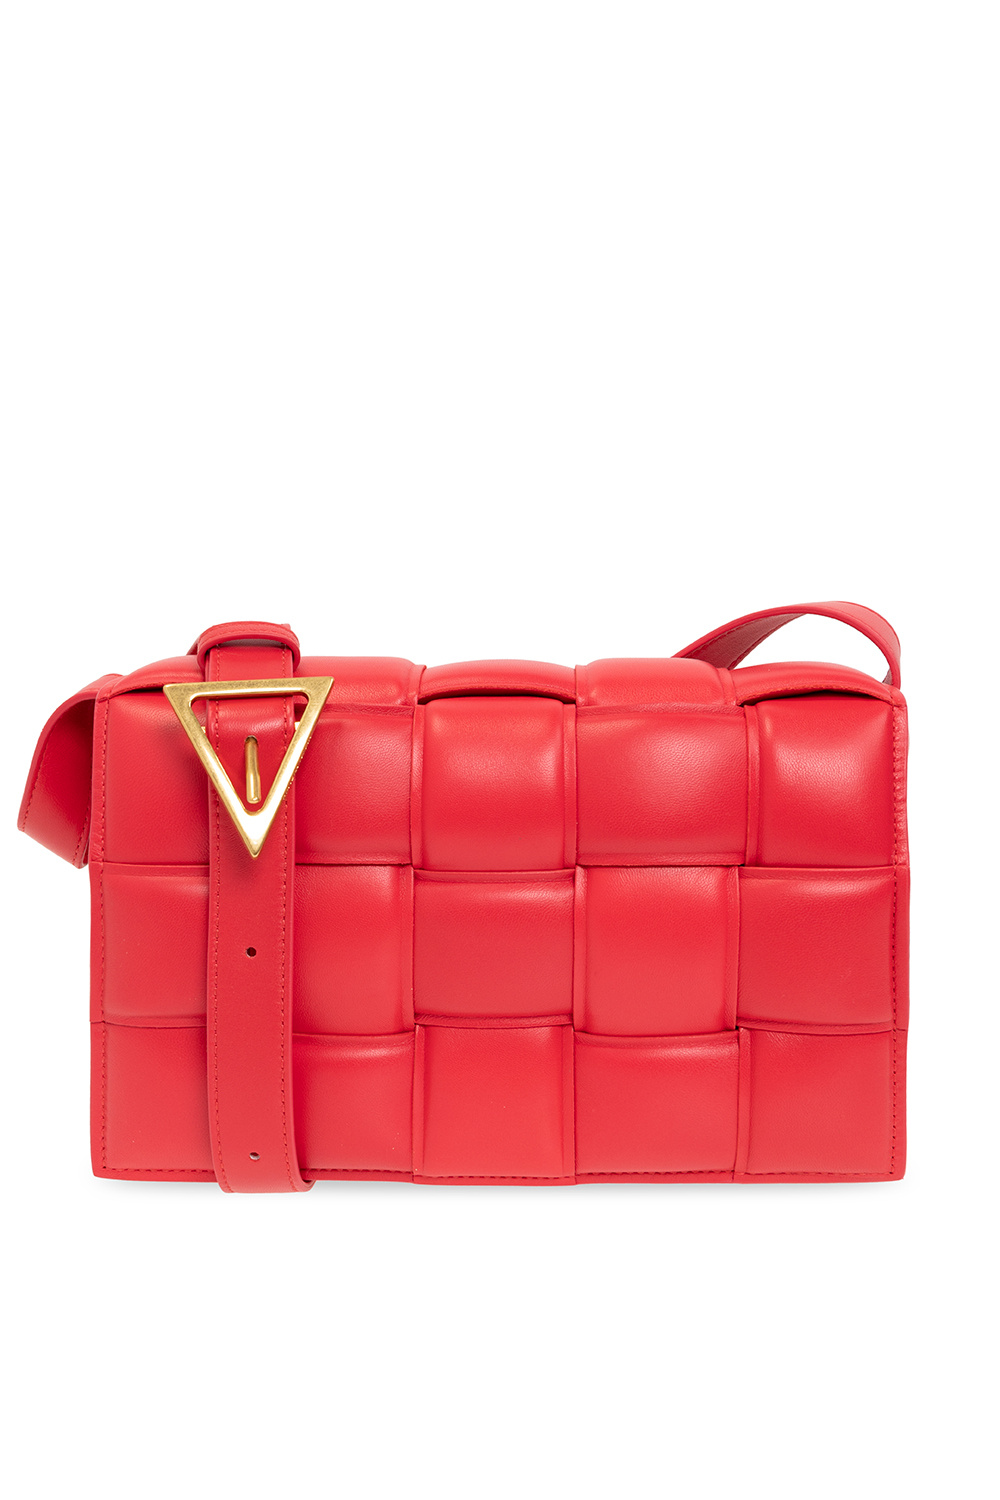 bottega from Veneta ‘Padded Cassette Small’ shoulder bag